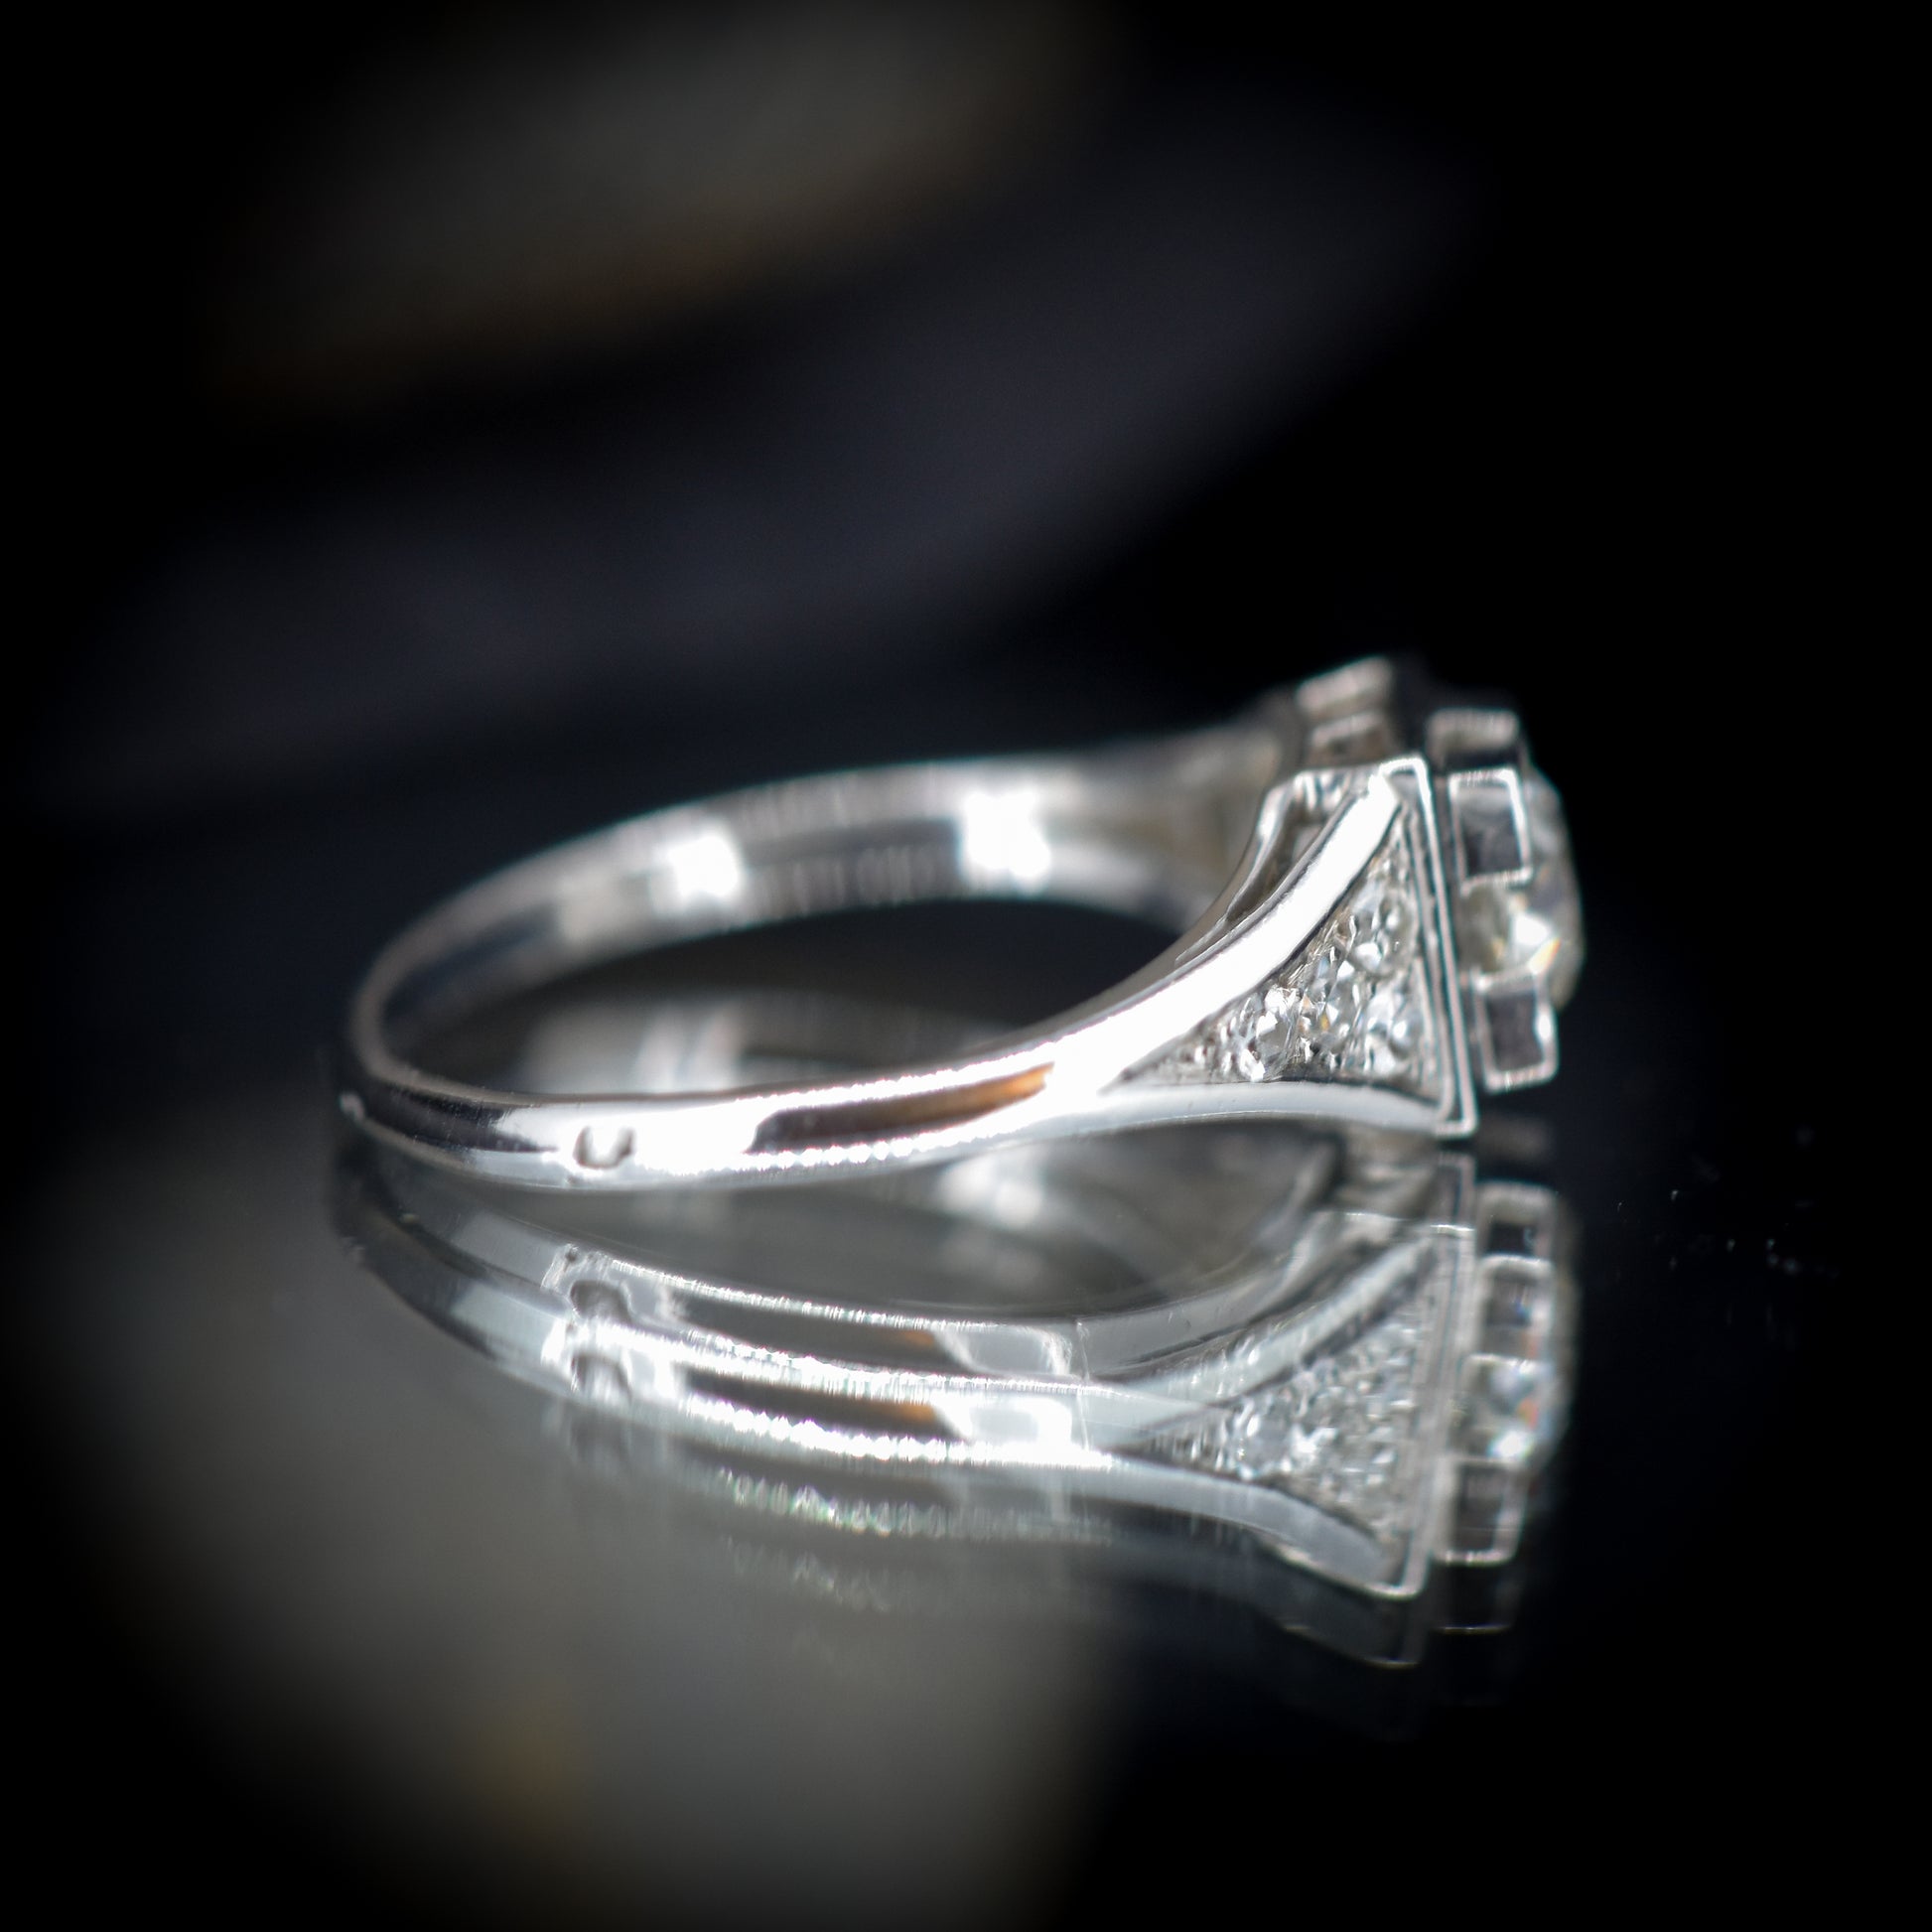 Art Deco Old Cut Diamond Platinum Ring | Antique Engagement Ring - Lancastrian Jewellers